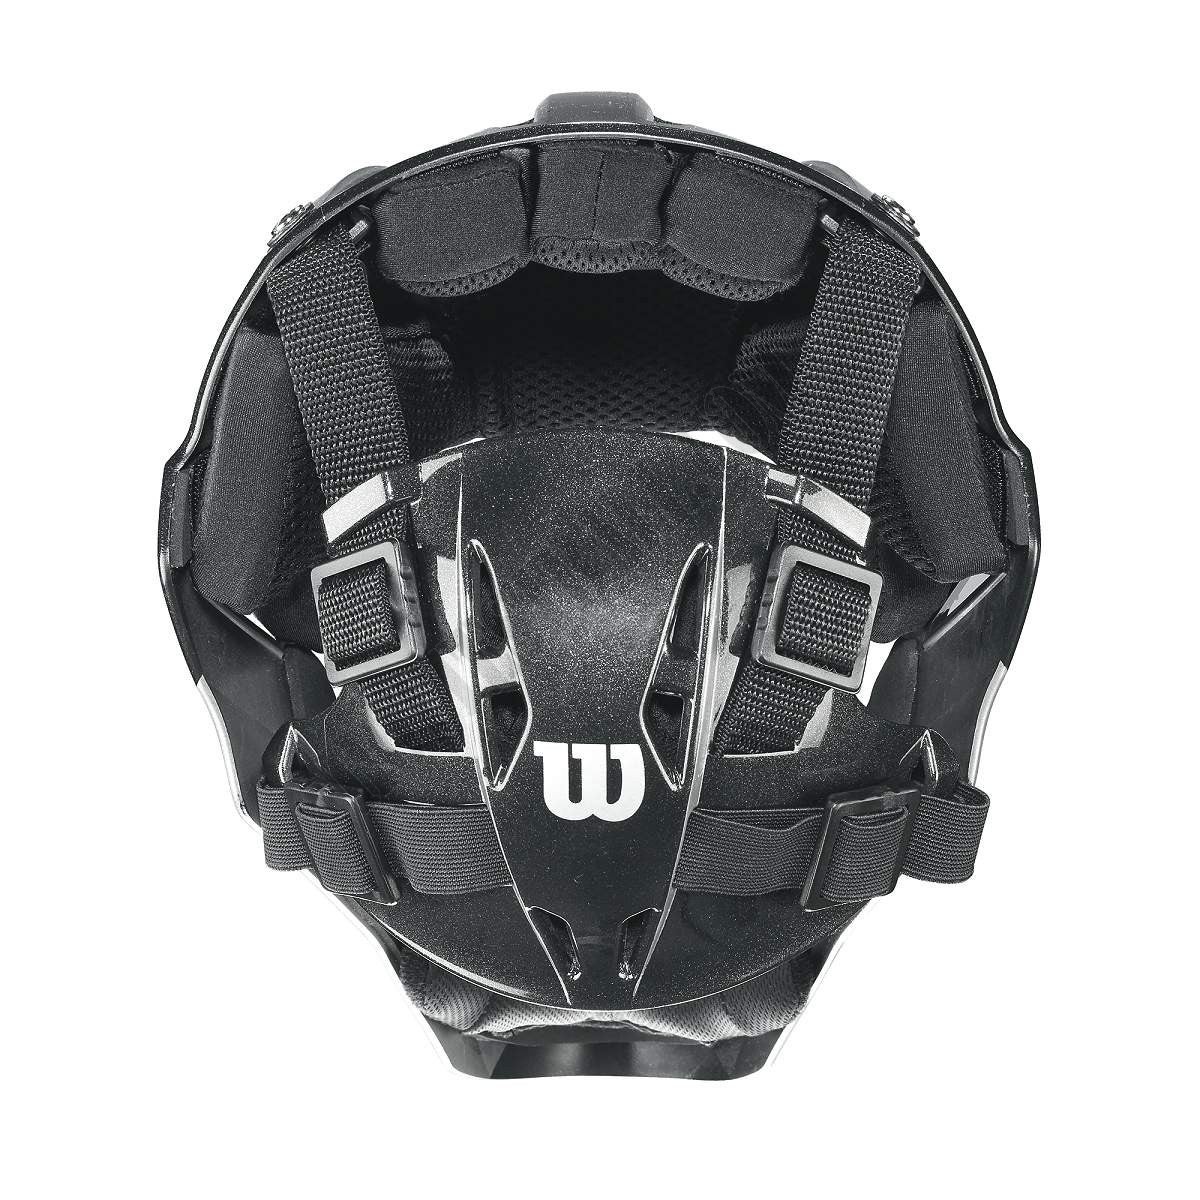 Pro Stock Catcher's Helmet - Wilson Discount Store - -3